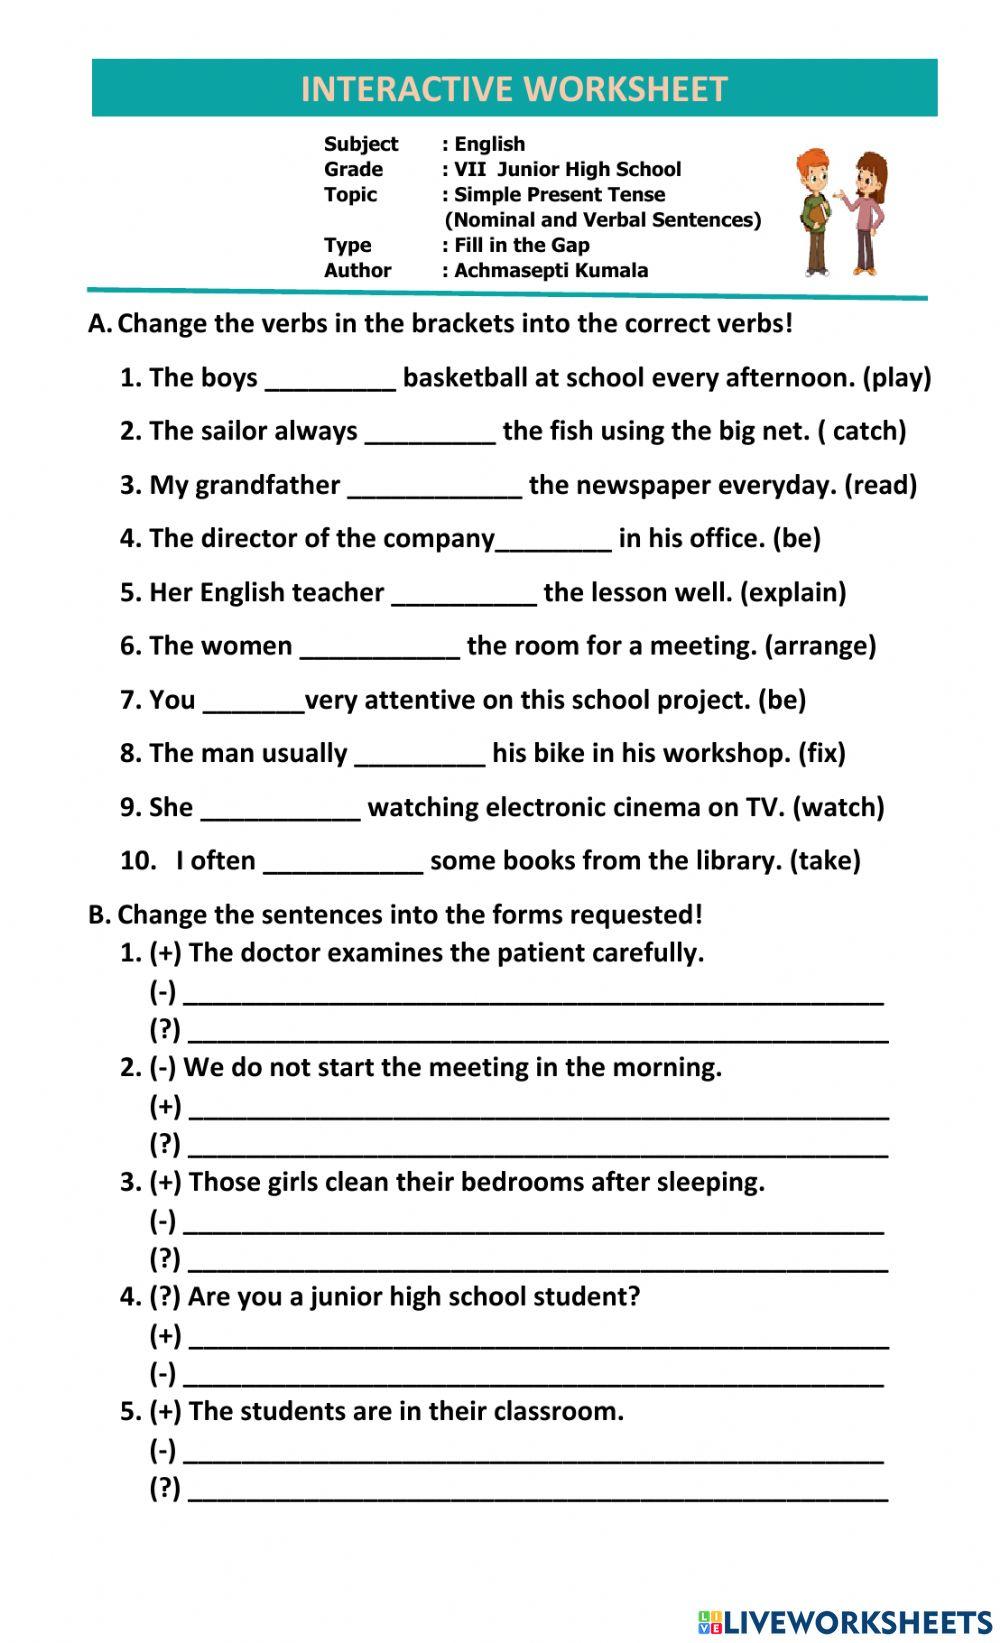 Tenses in English, Verb Tenses Worksheet - Academy Simple